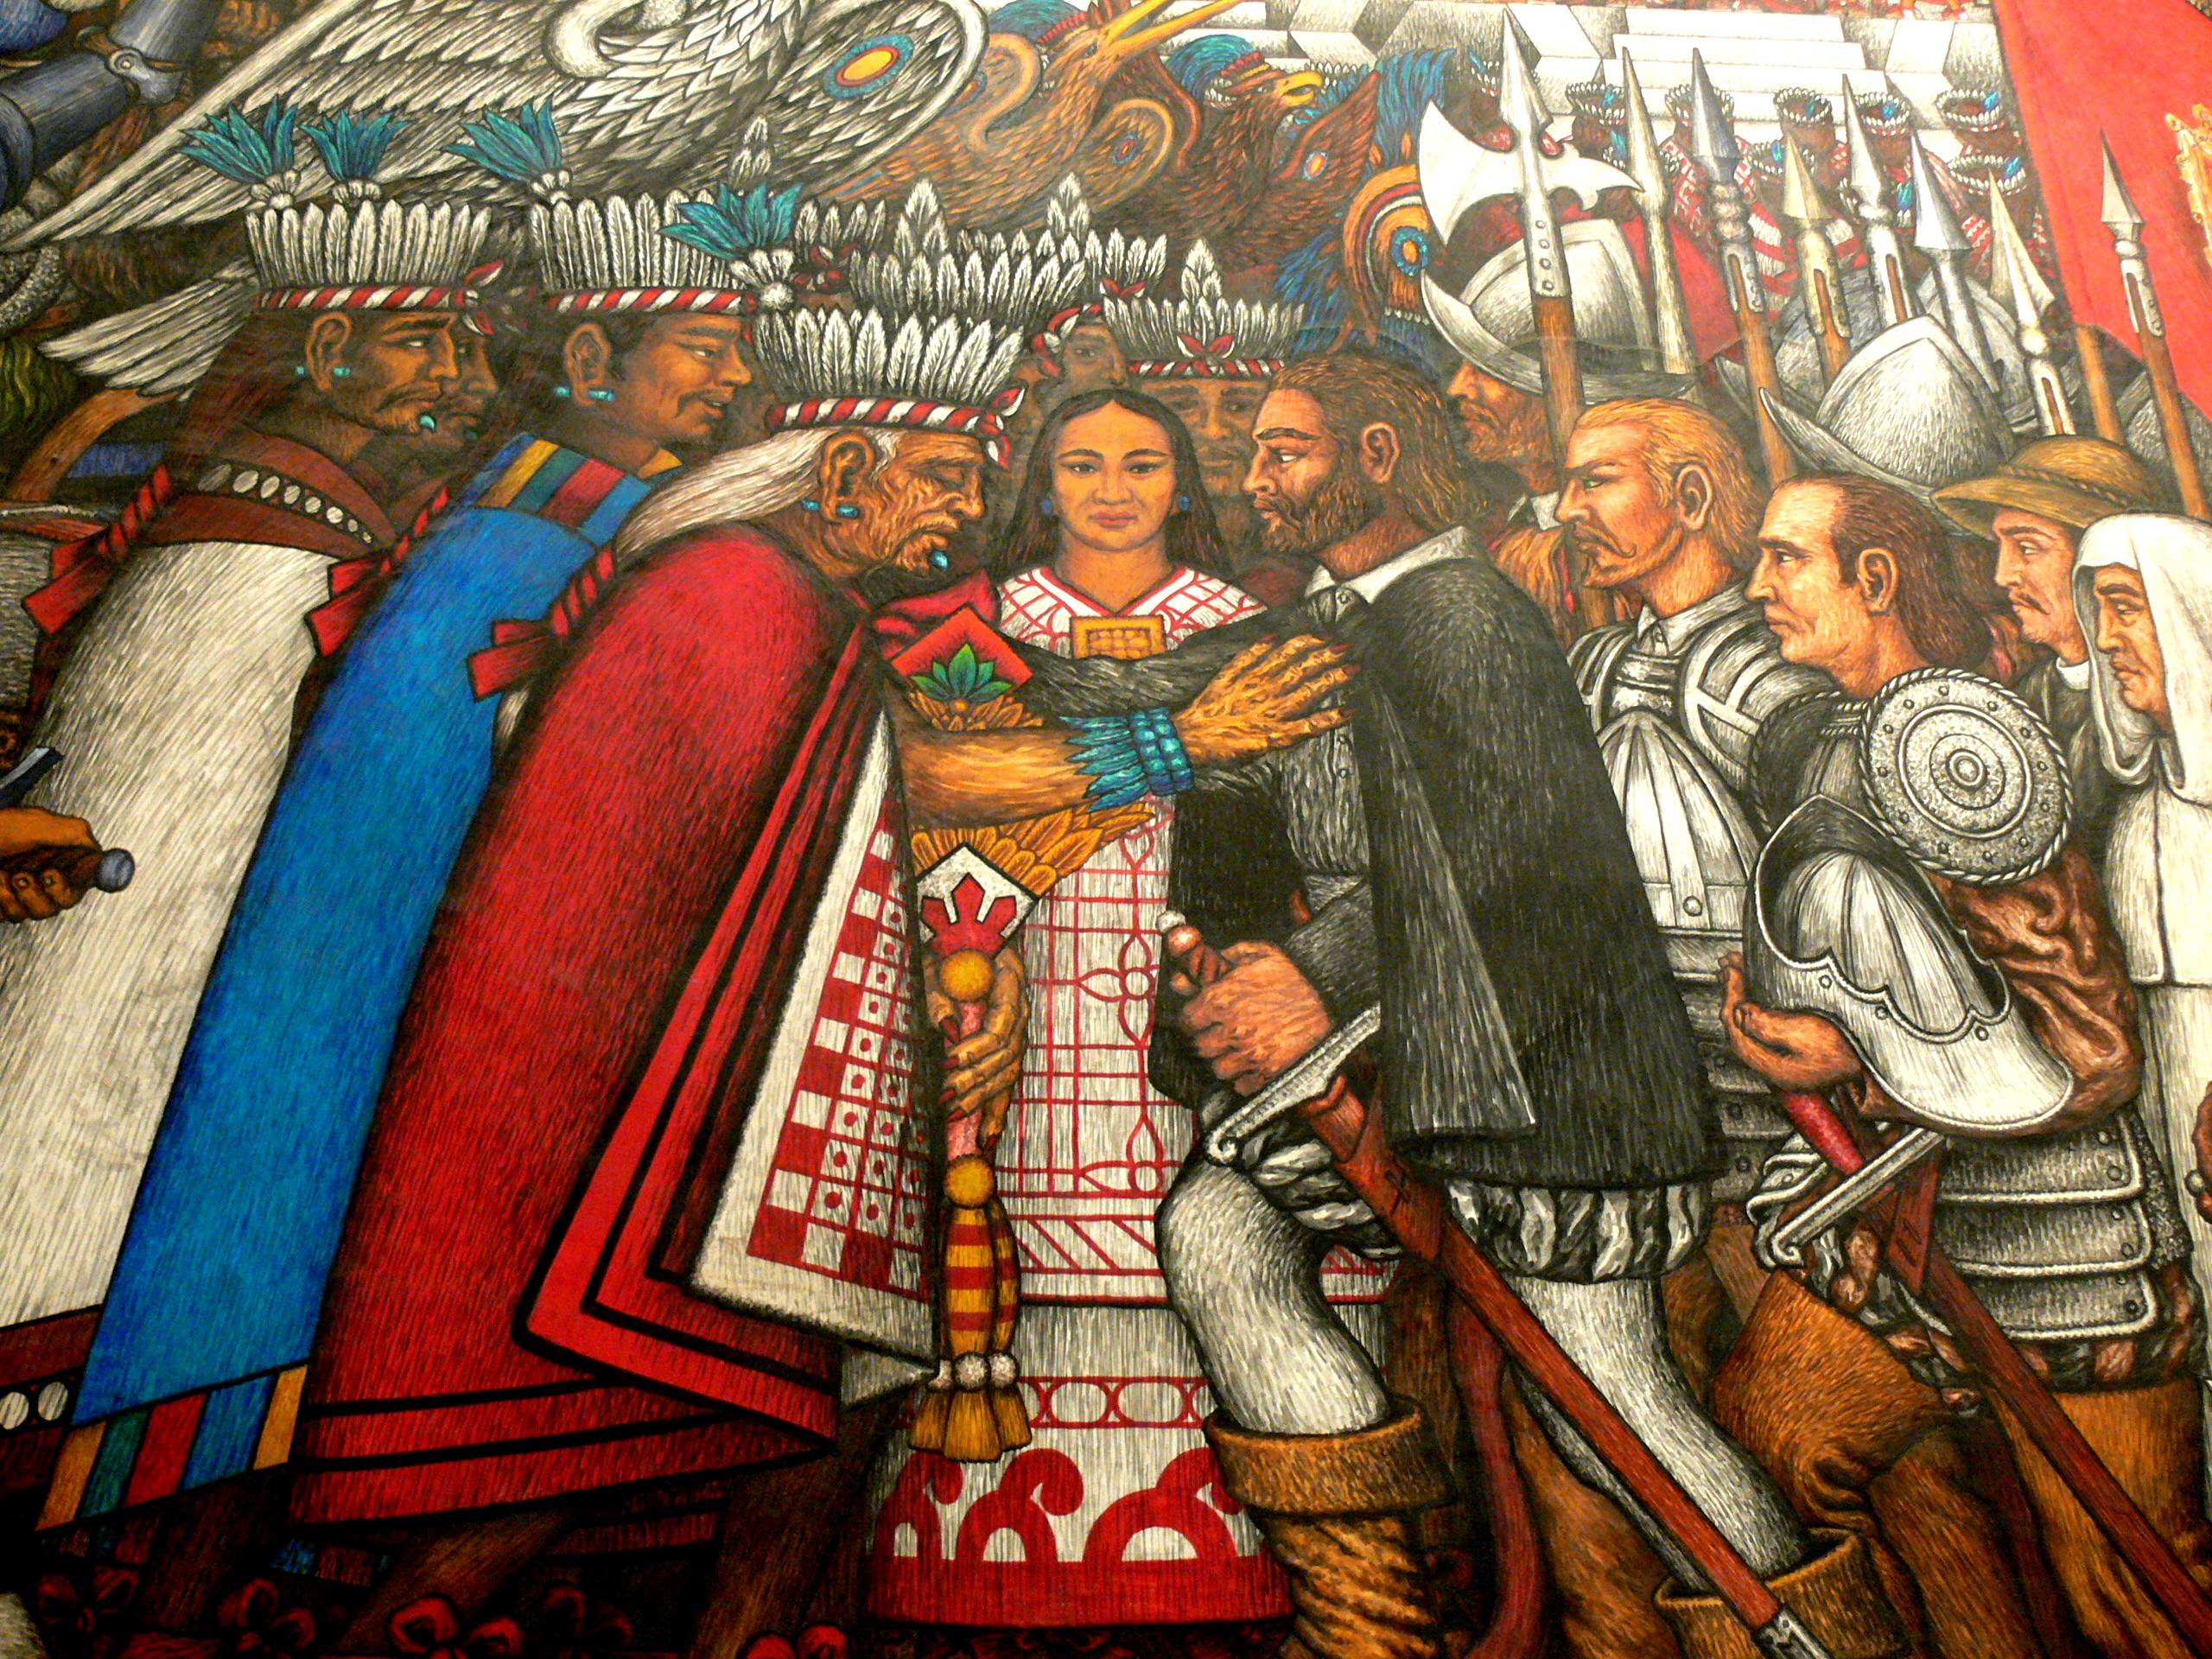 La Malinche traduce las conversaciones de Cortés con los tlaxcaltecas, obra del famoso muralista Desiderio Hernández Xochitiotzin en el Palacio de Gobierno de Tlaxcala.